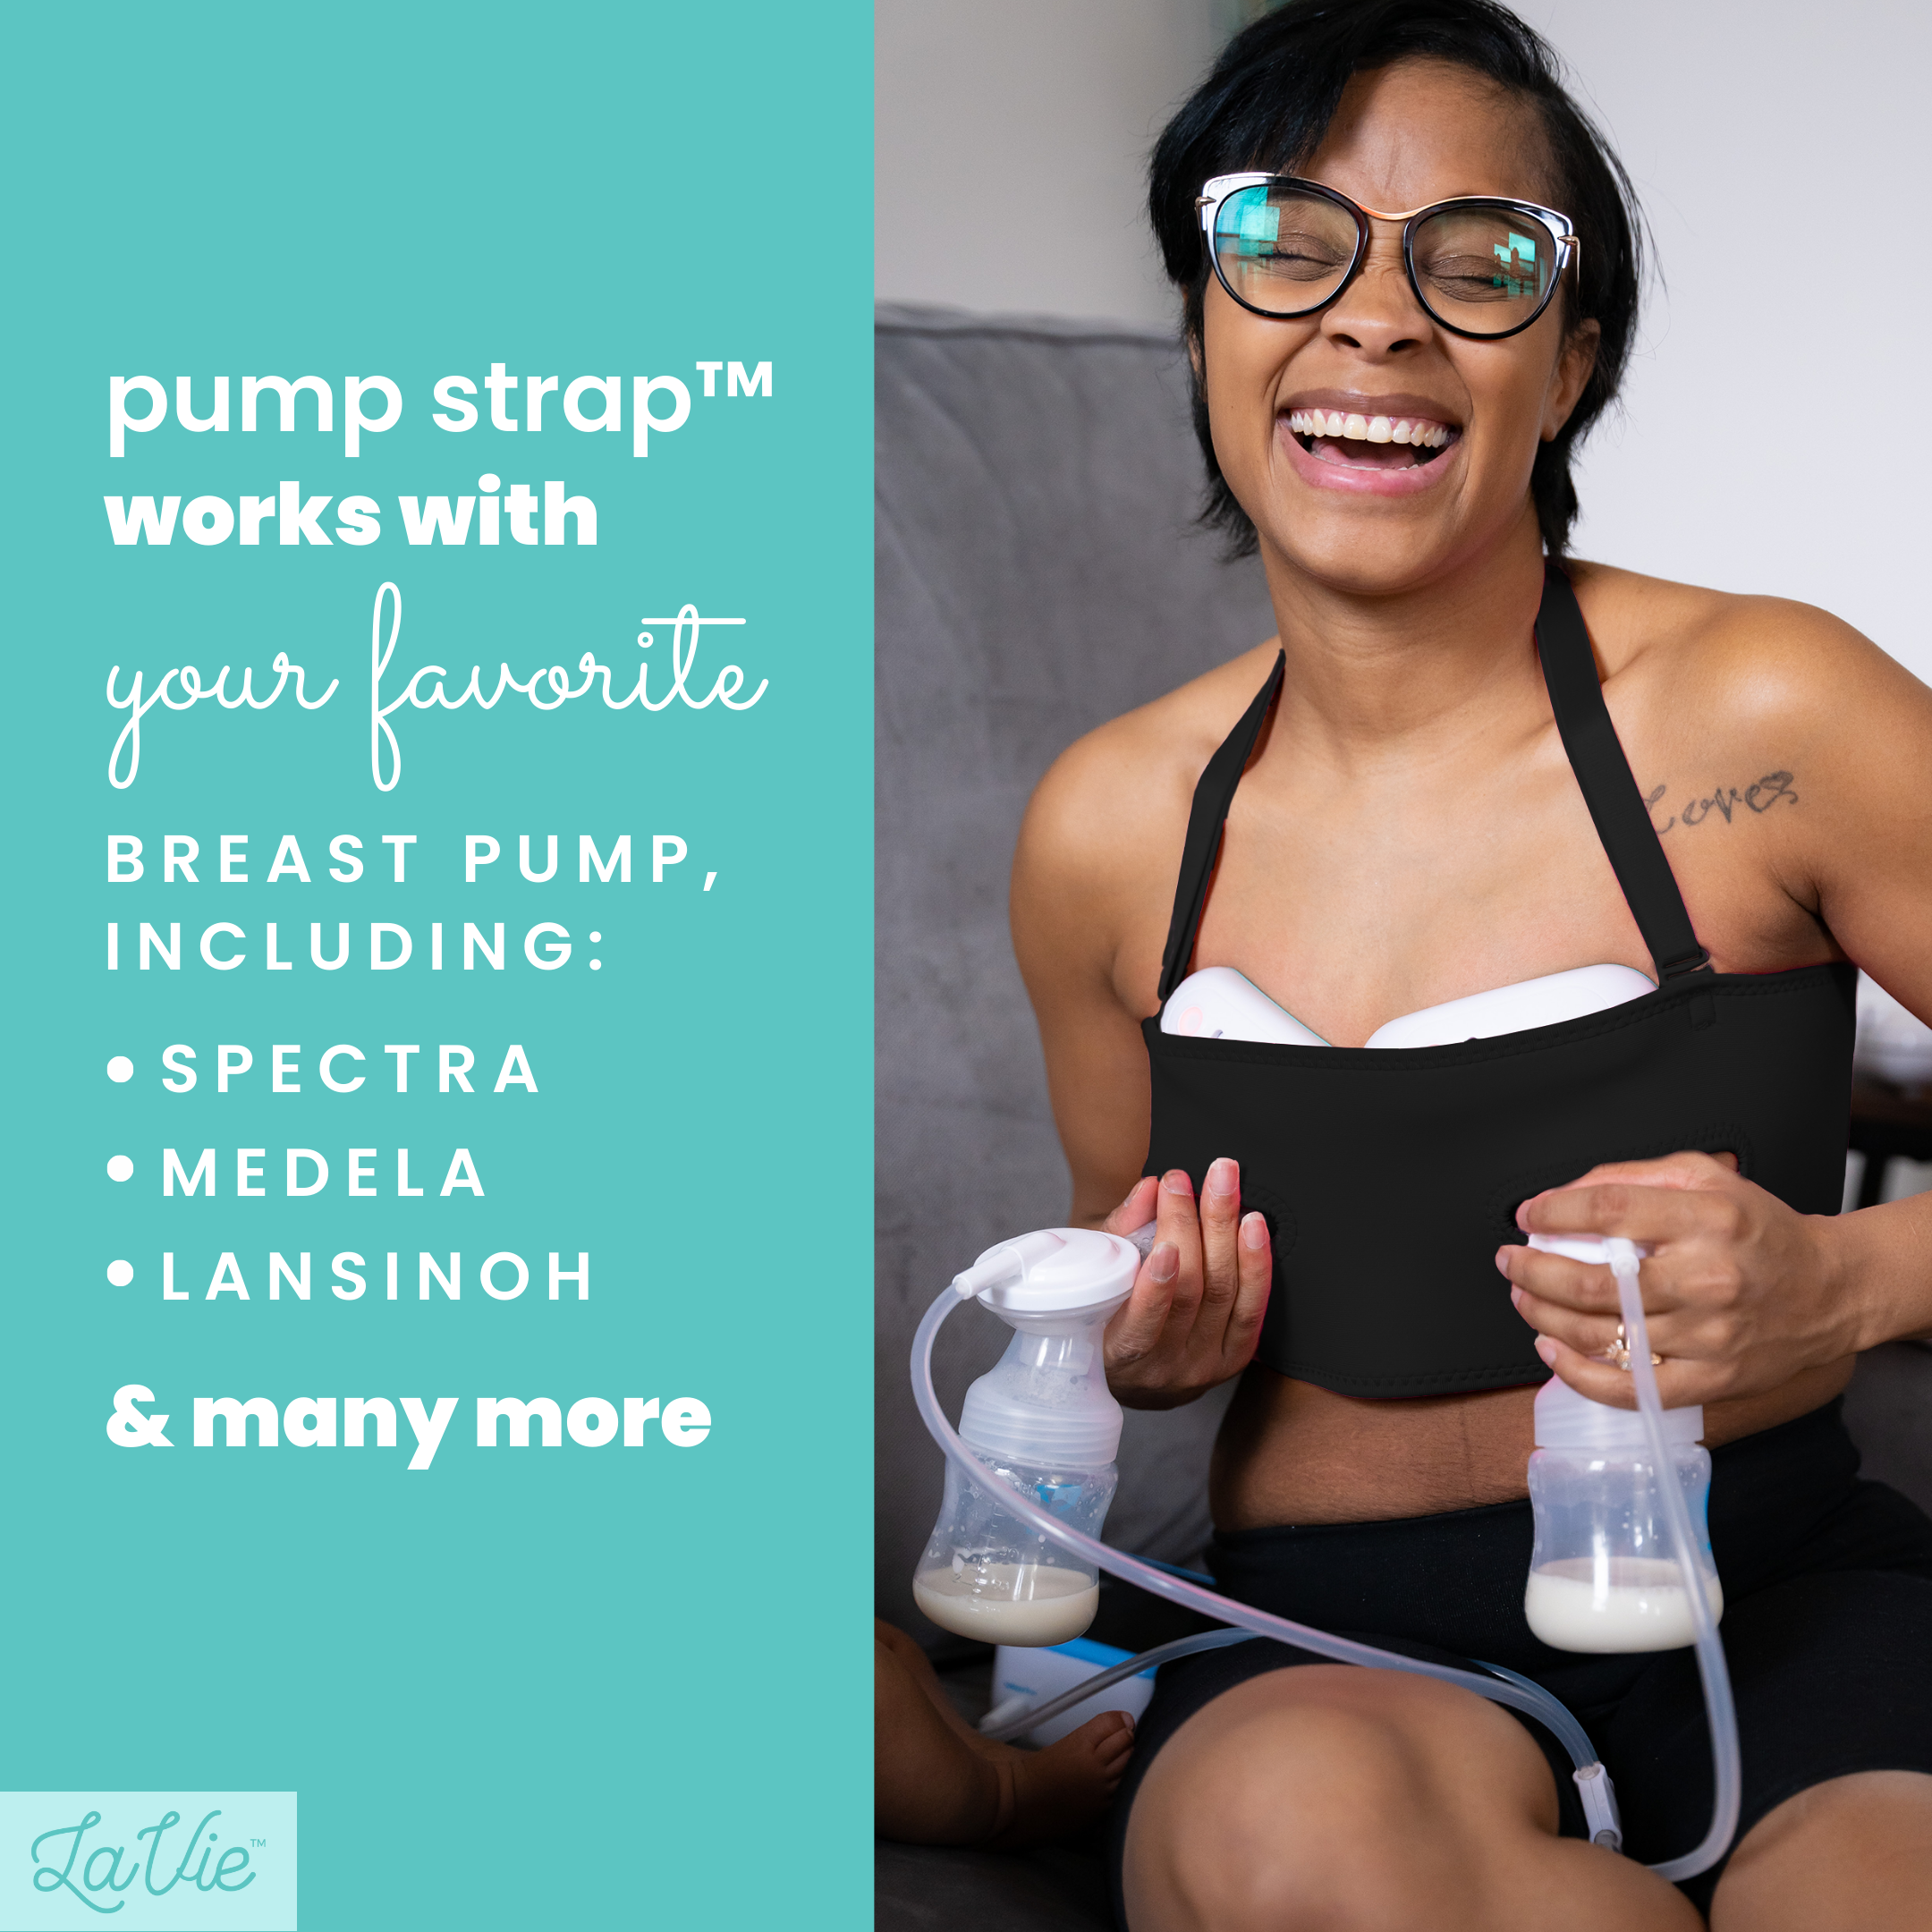 Pump Strap hands free breast pump bra – PumpStrap